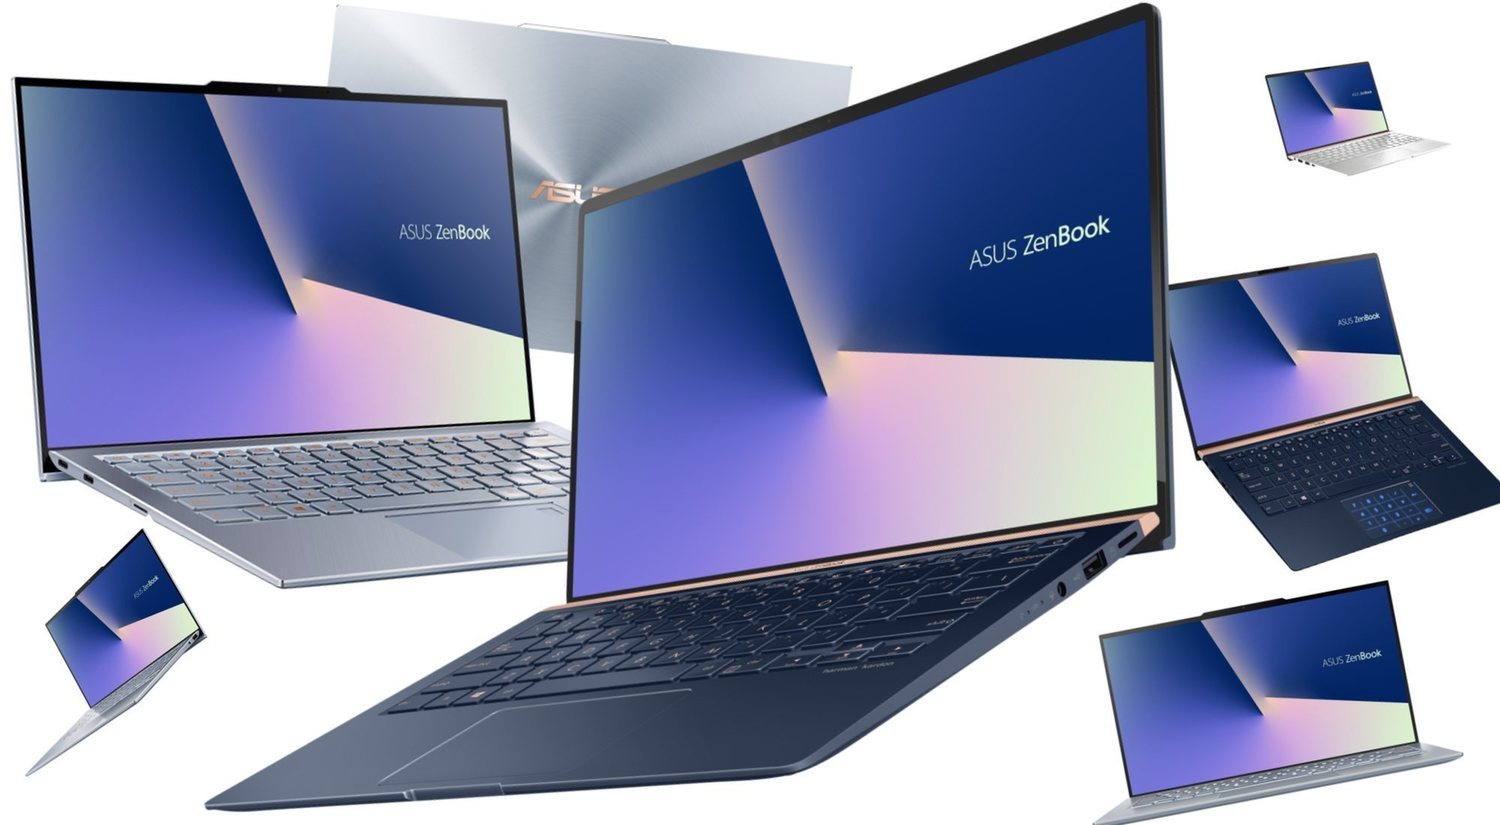 ASUS ZenBook S13 y ASUS ZenBook 14: características y precio